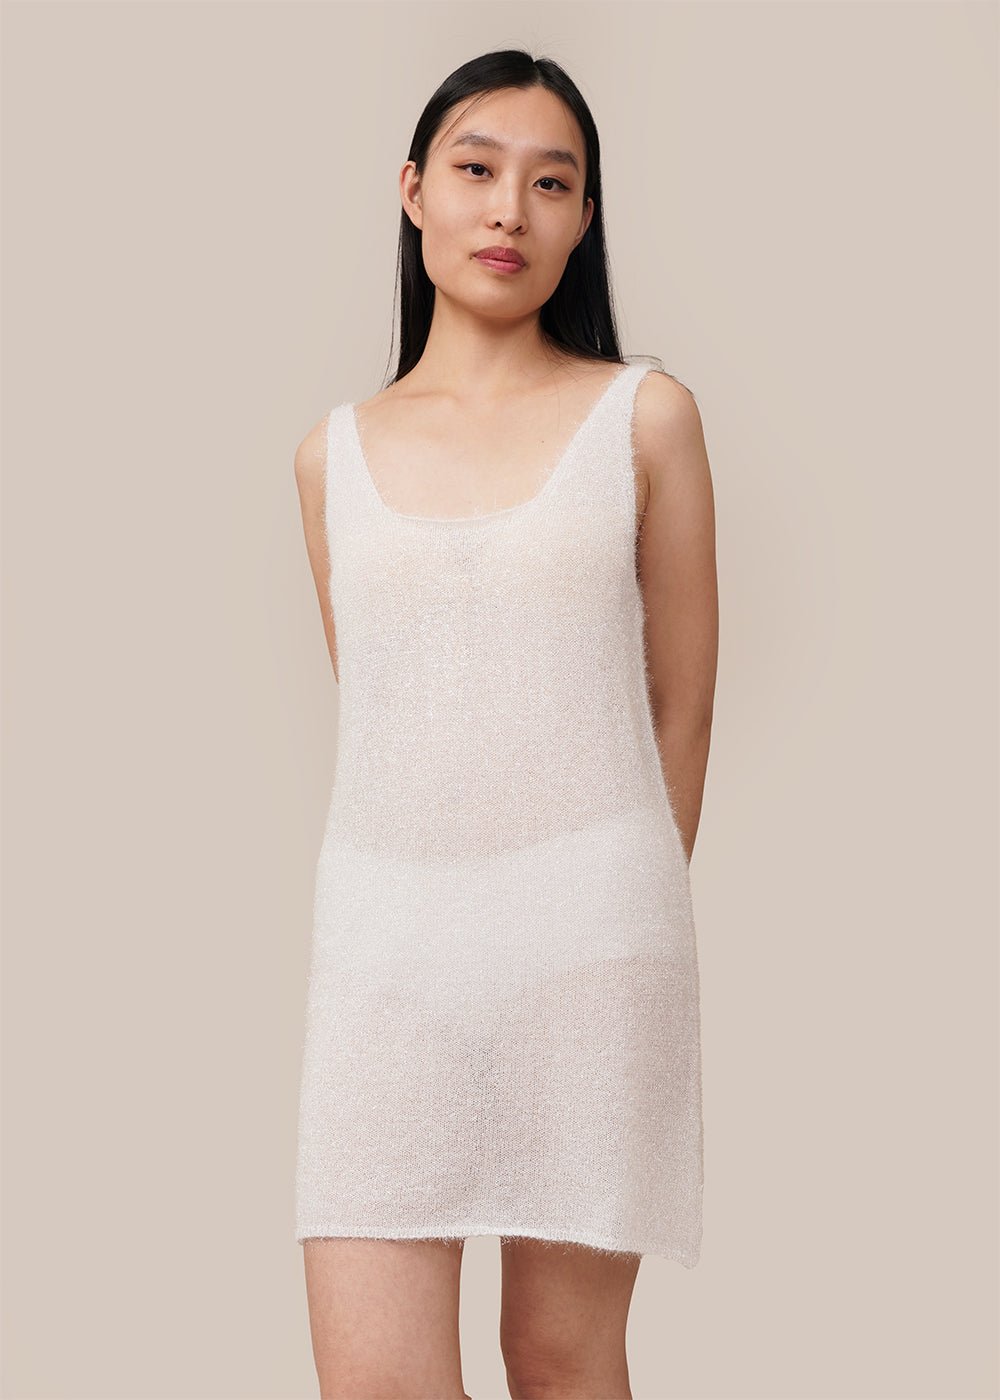 AMOMENTO White Hairy Layered Dress - New Classics Studios Sustainable Ethical Fashion Canada